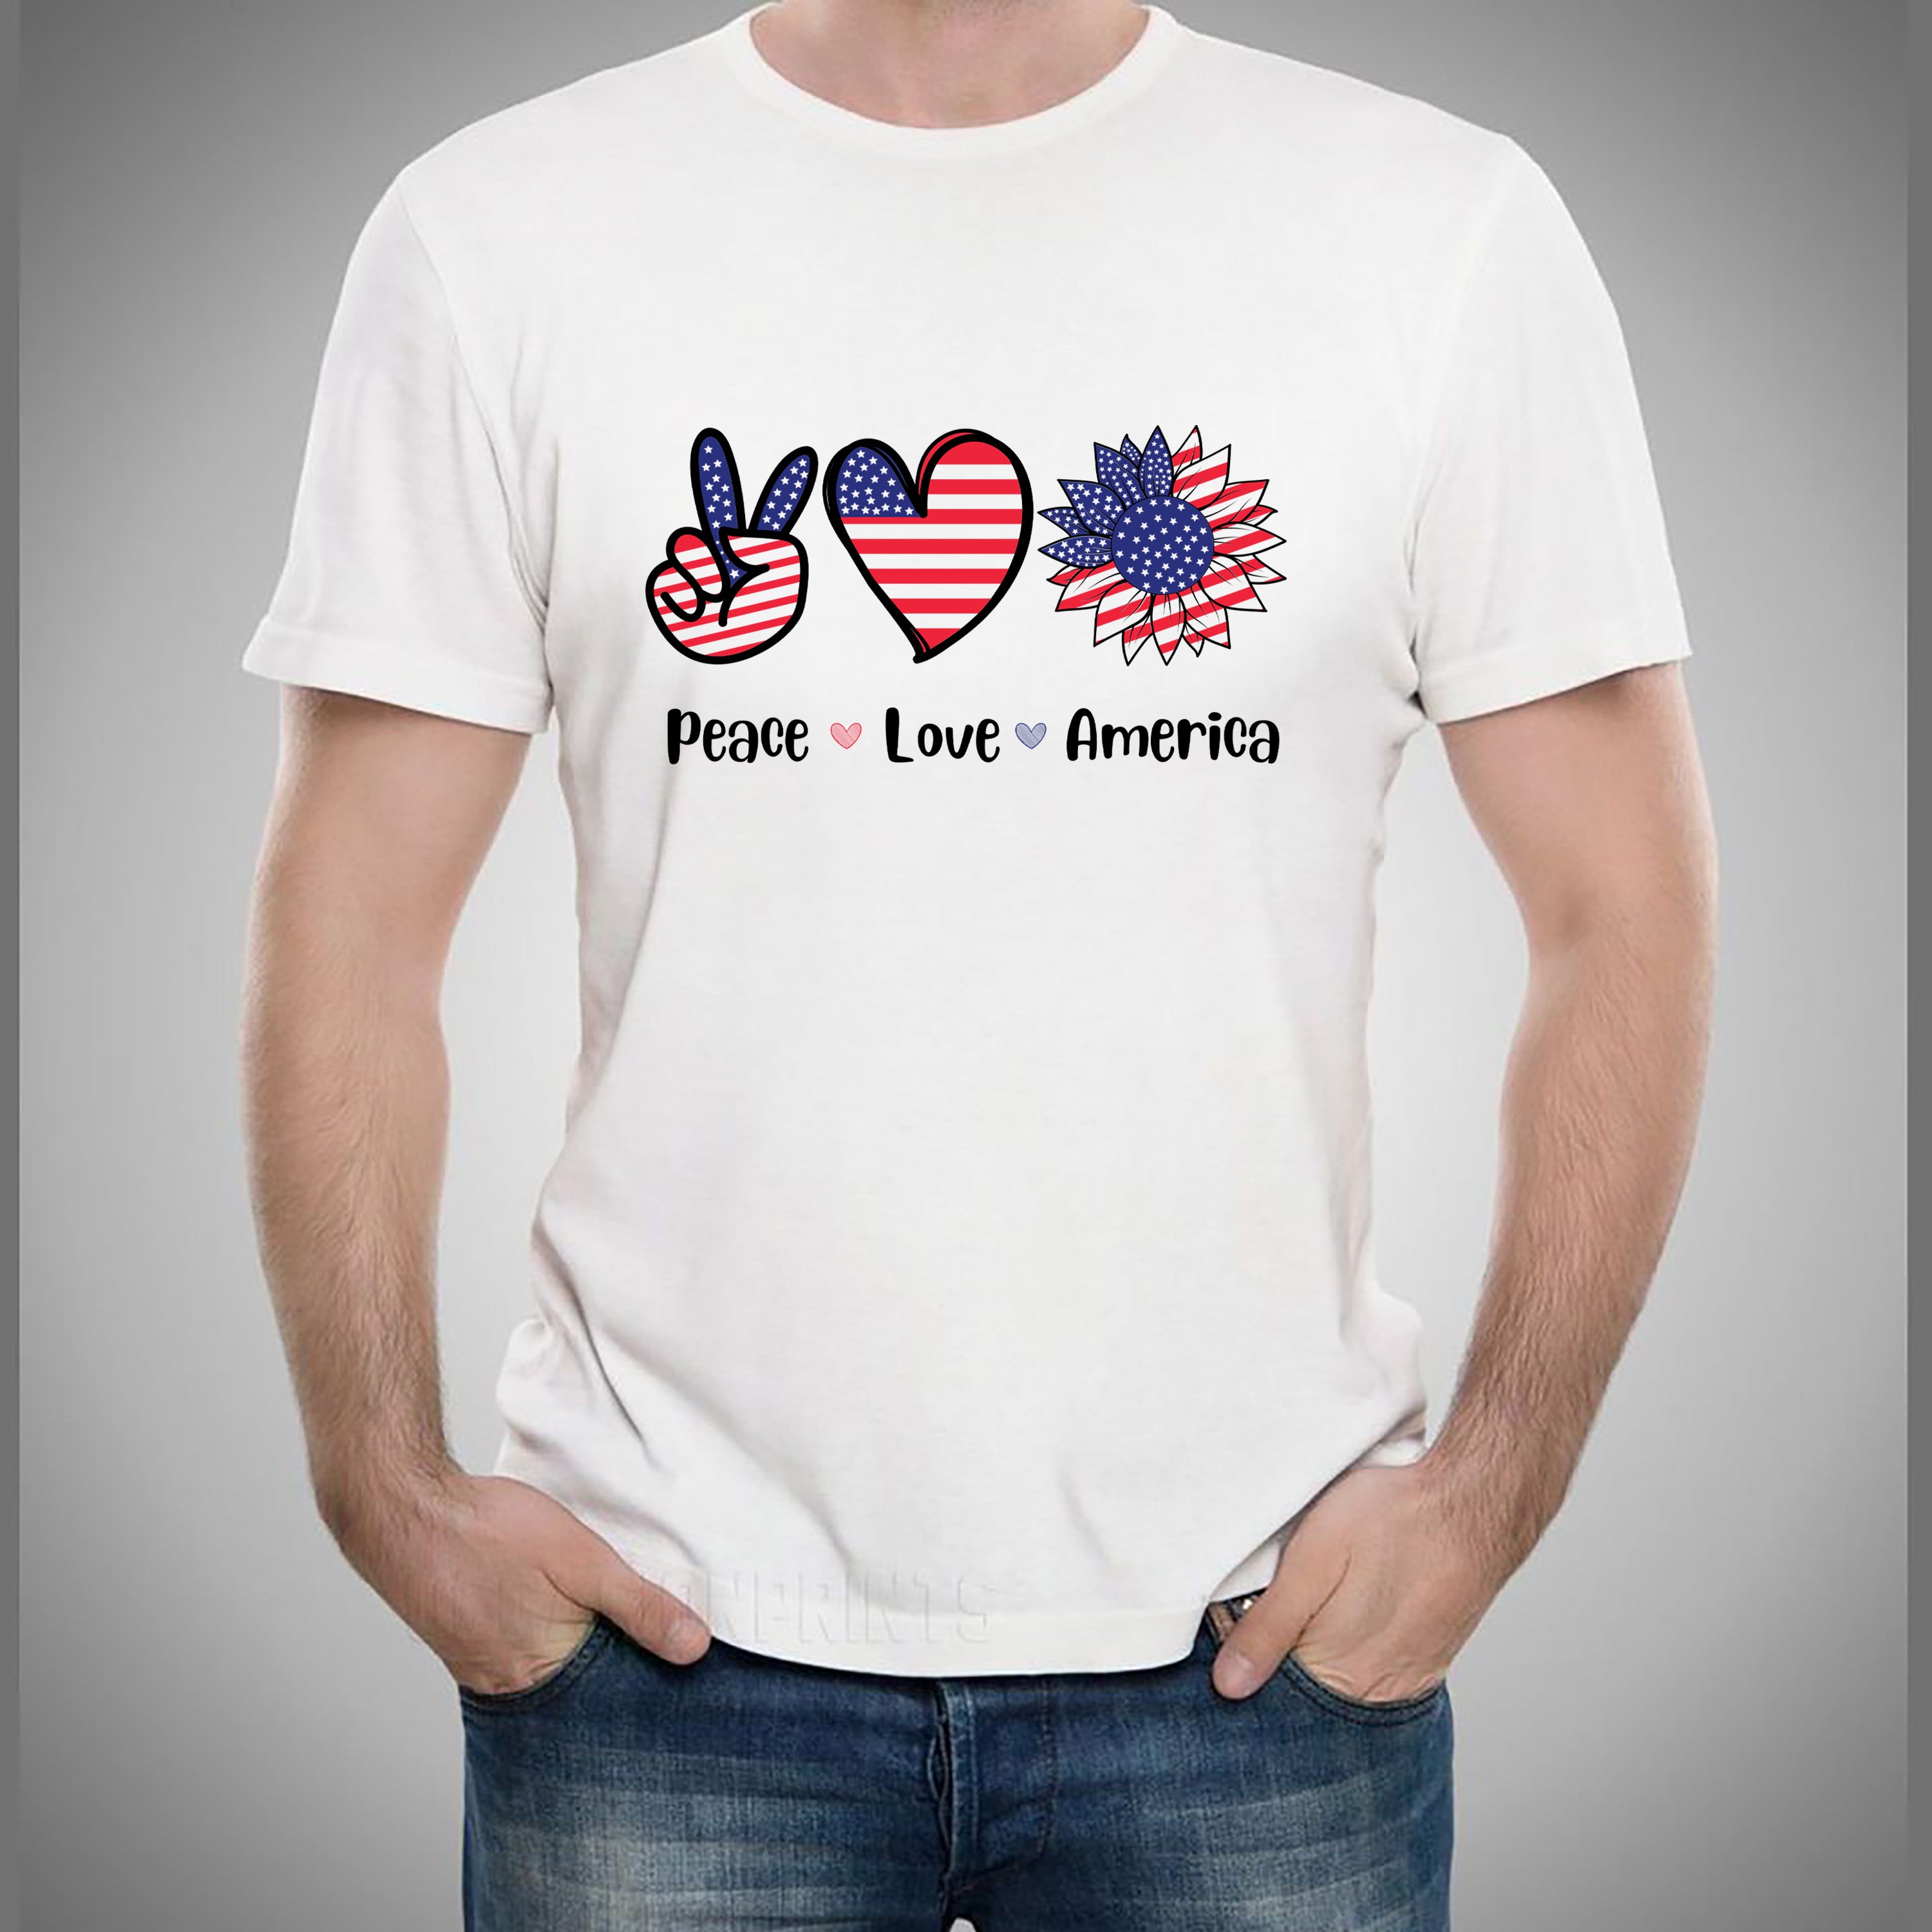 Peace . Love. America -Unisex Tee